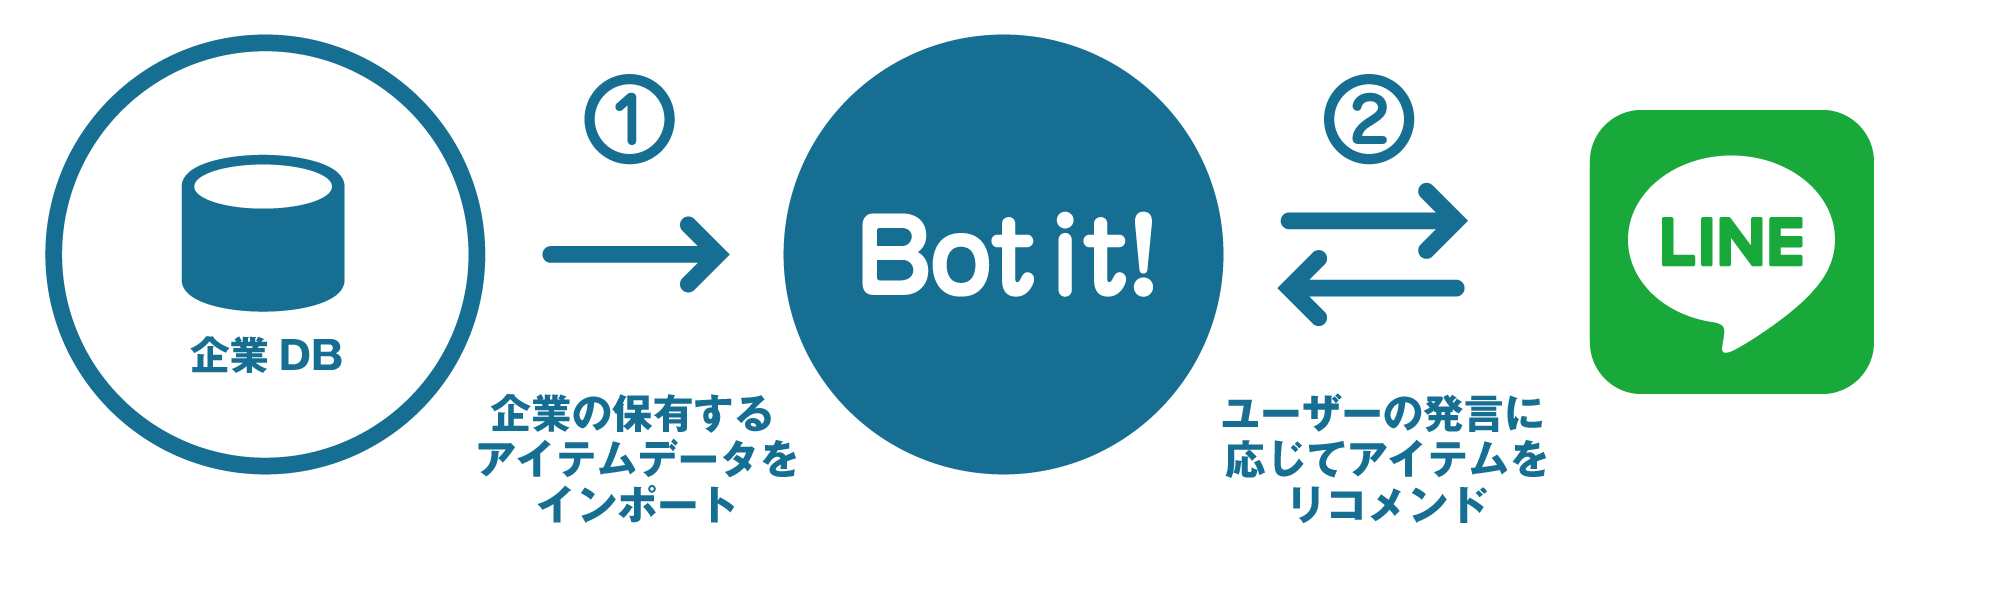 CyberZ、人工知能開発組織「AITEC」にてLINEに対応したチャットボット作成ツール「Bot it!」を提供開始